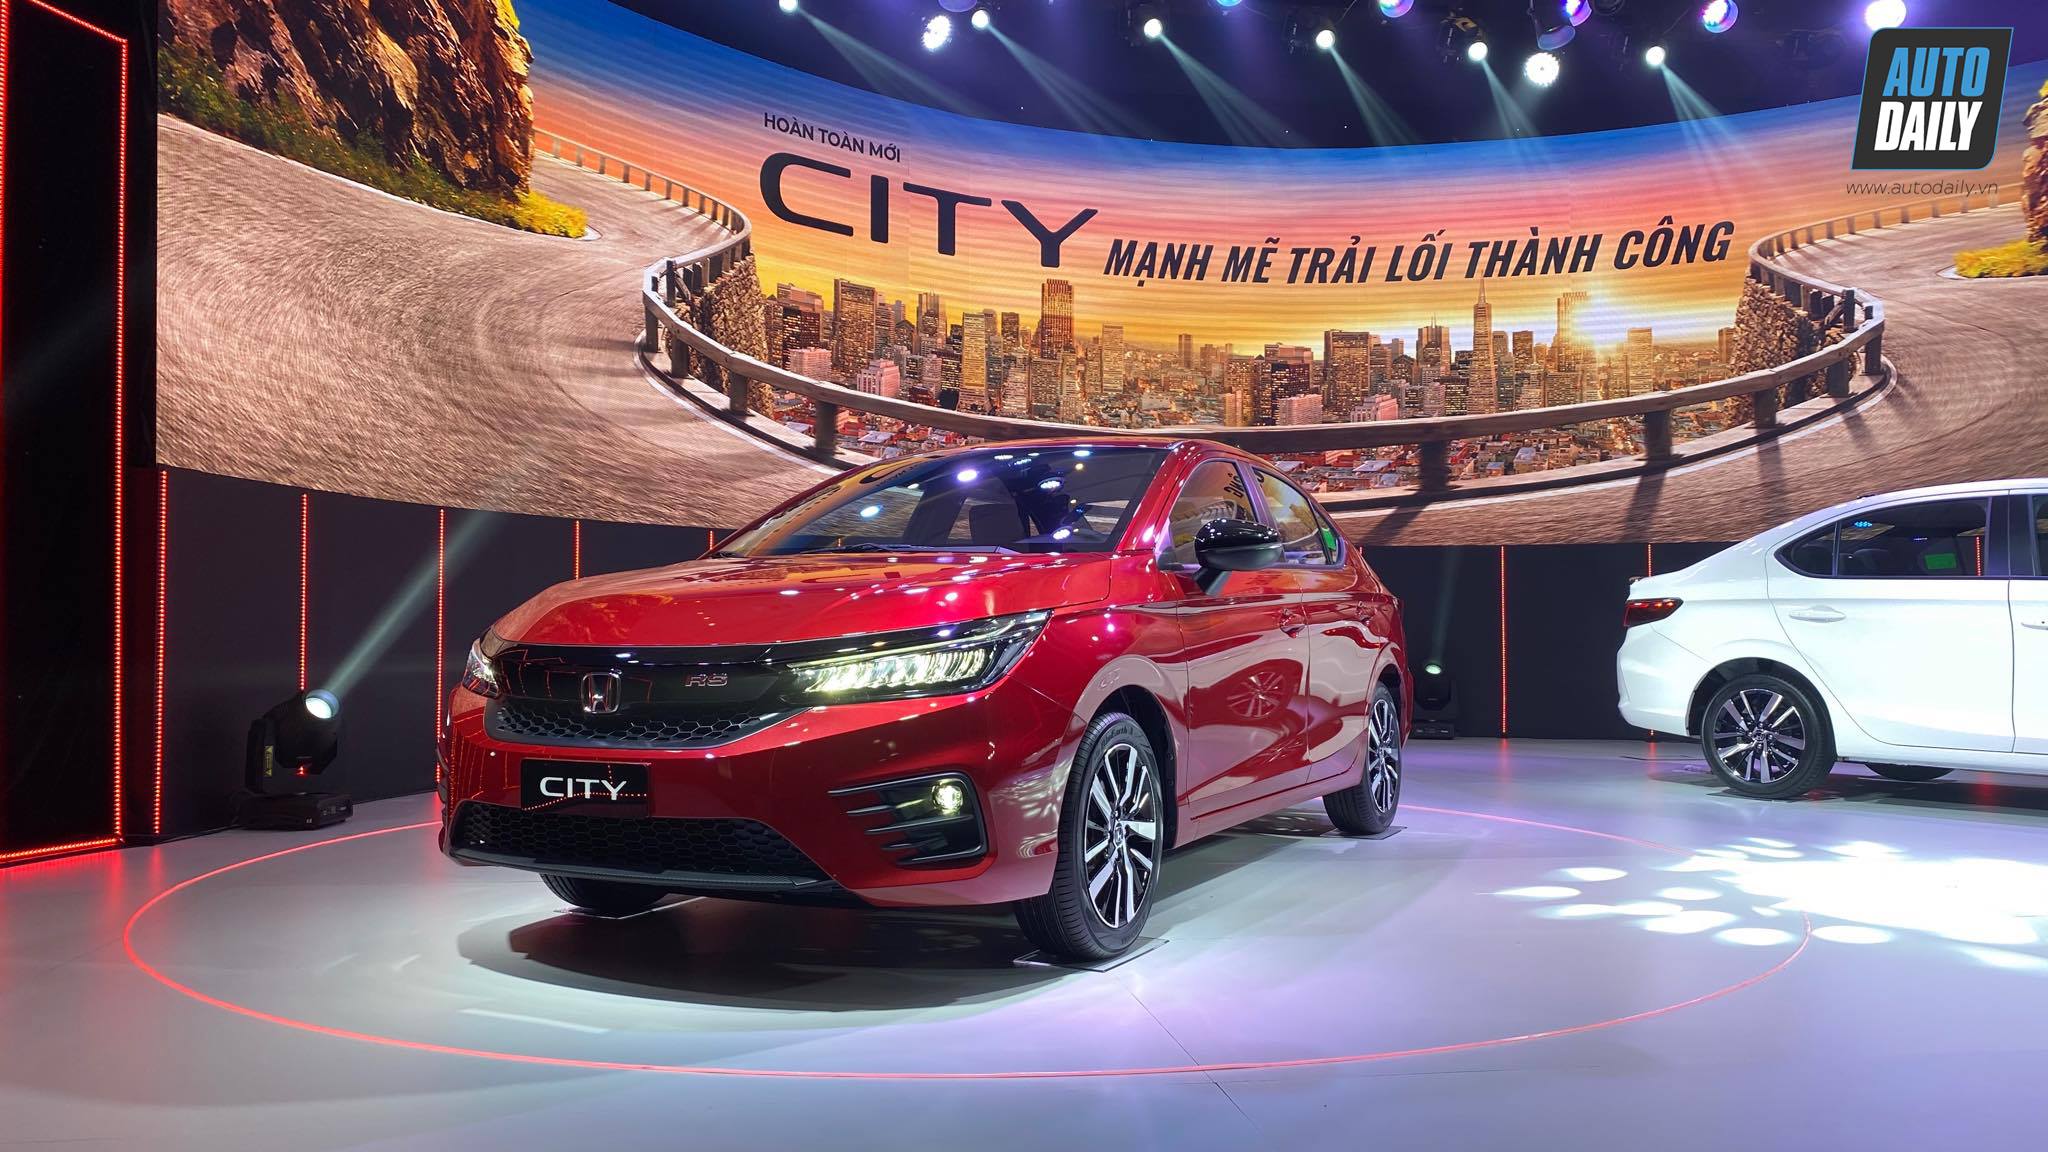 Honda City RS 2021 màu đỏ - Honda Ô tô Khánh Hòa - Nha Trang - Hotline 0905 254 255